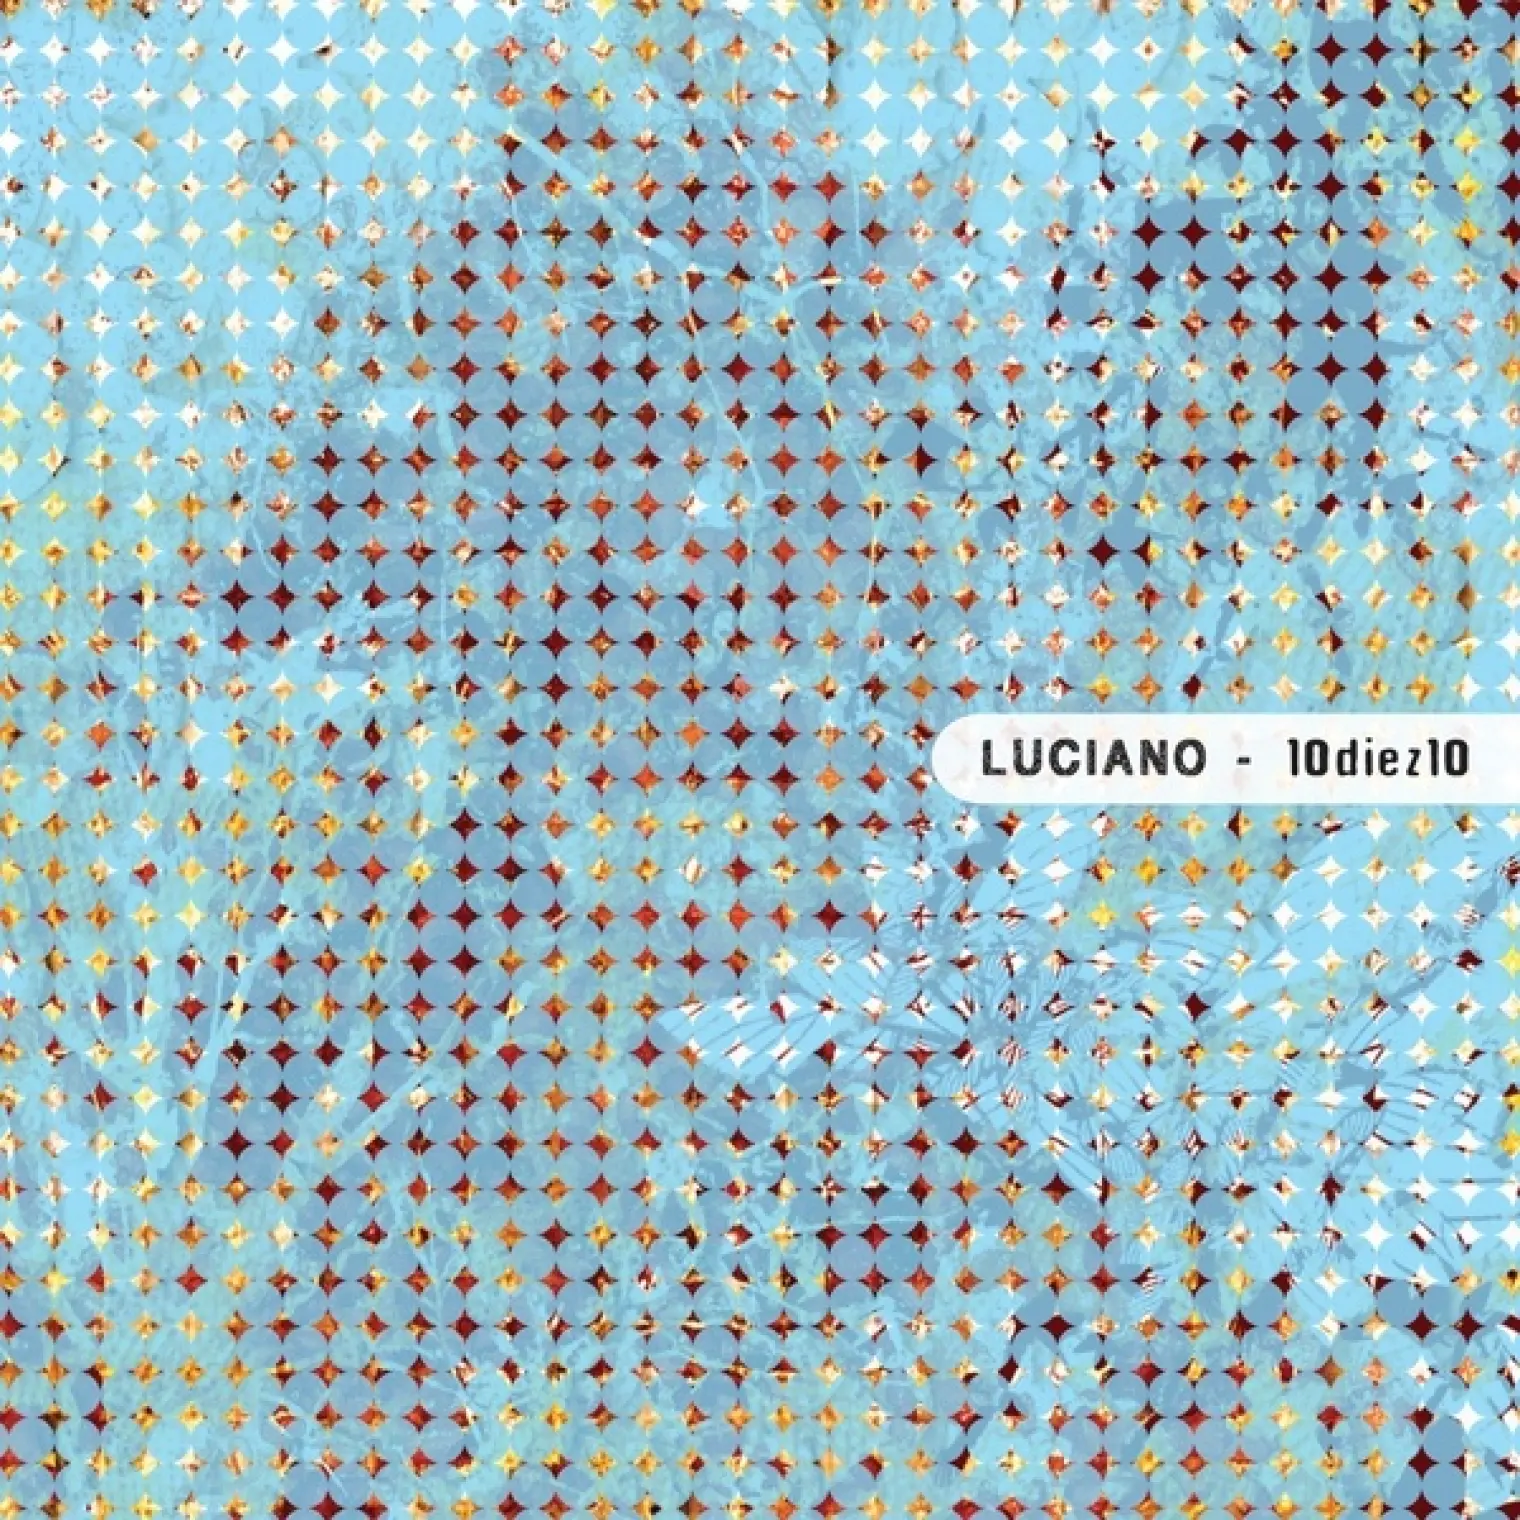 10diez10 -  Luciano 